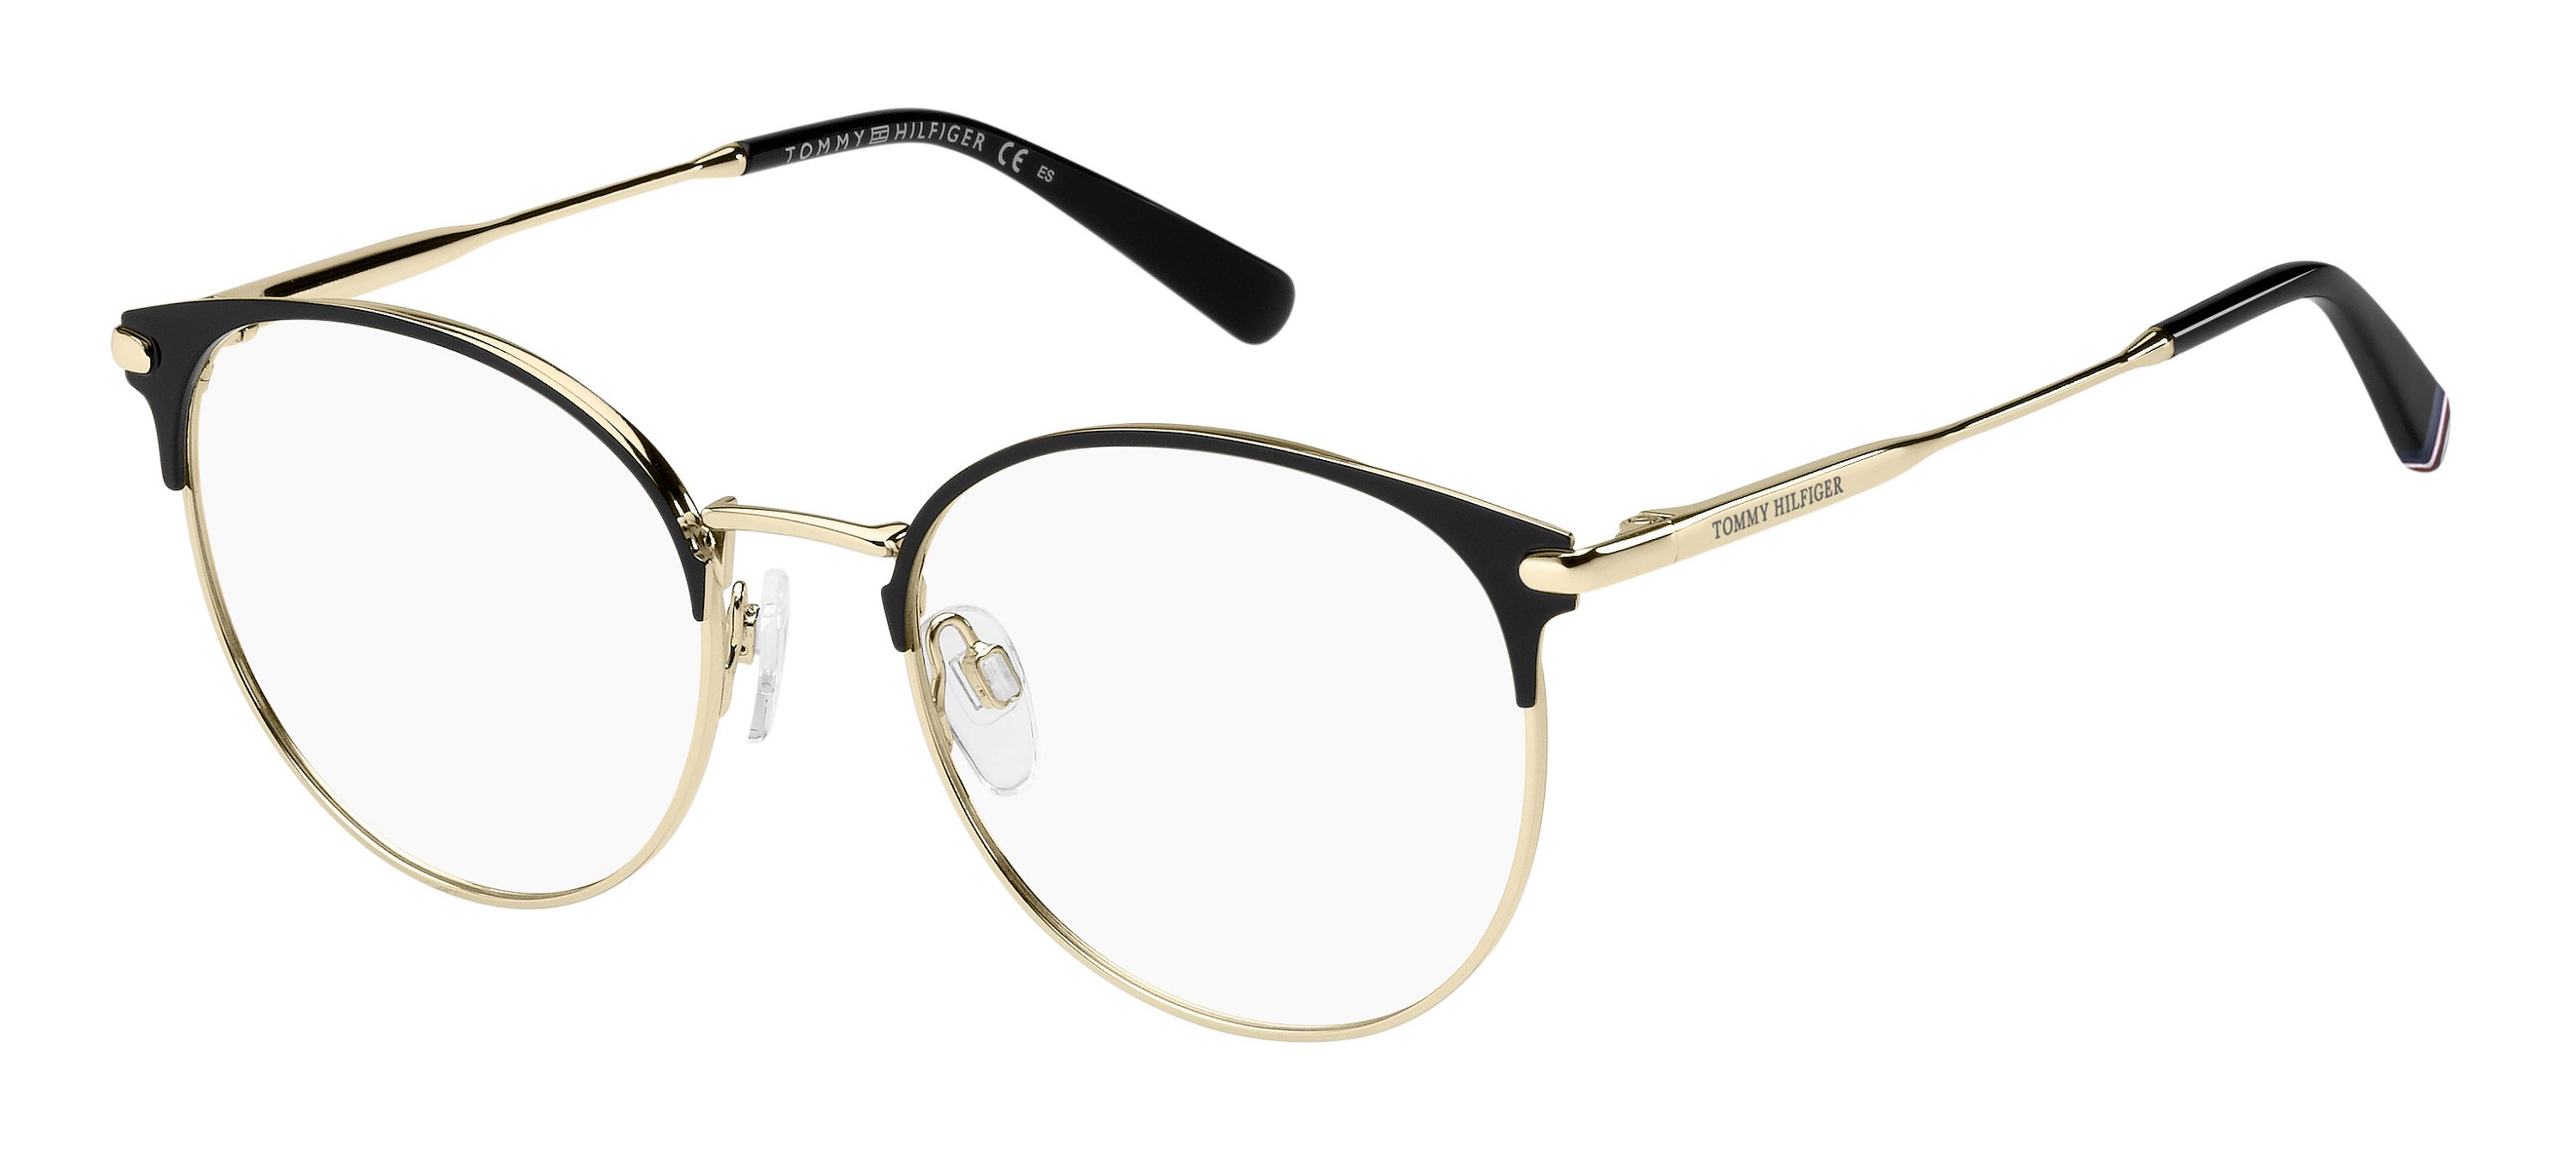 Tommy Hilfiger Brille TH1959 2M2 52 schwarz/gold